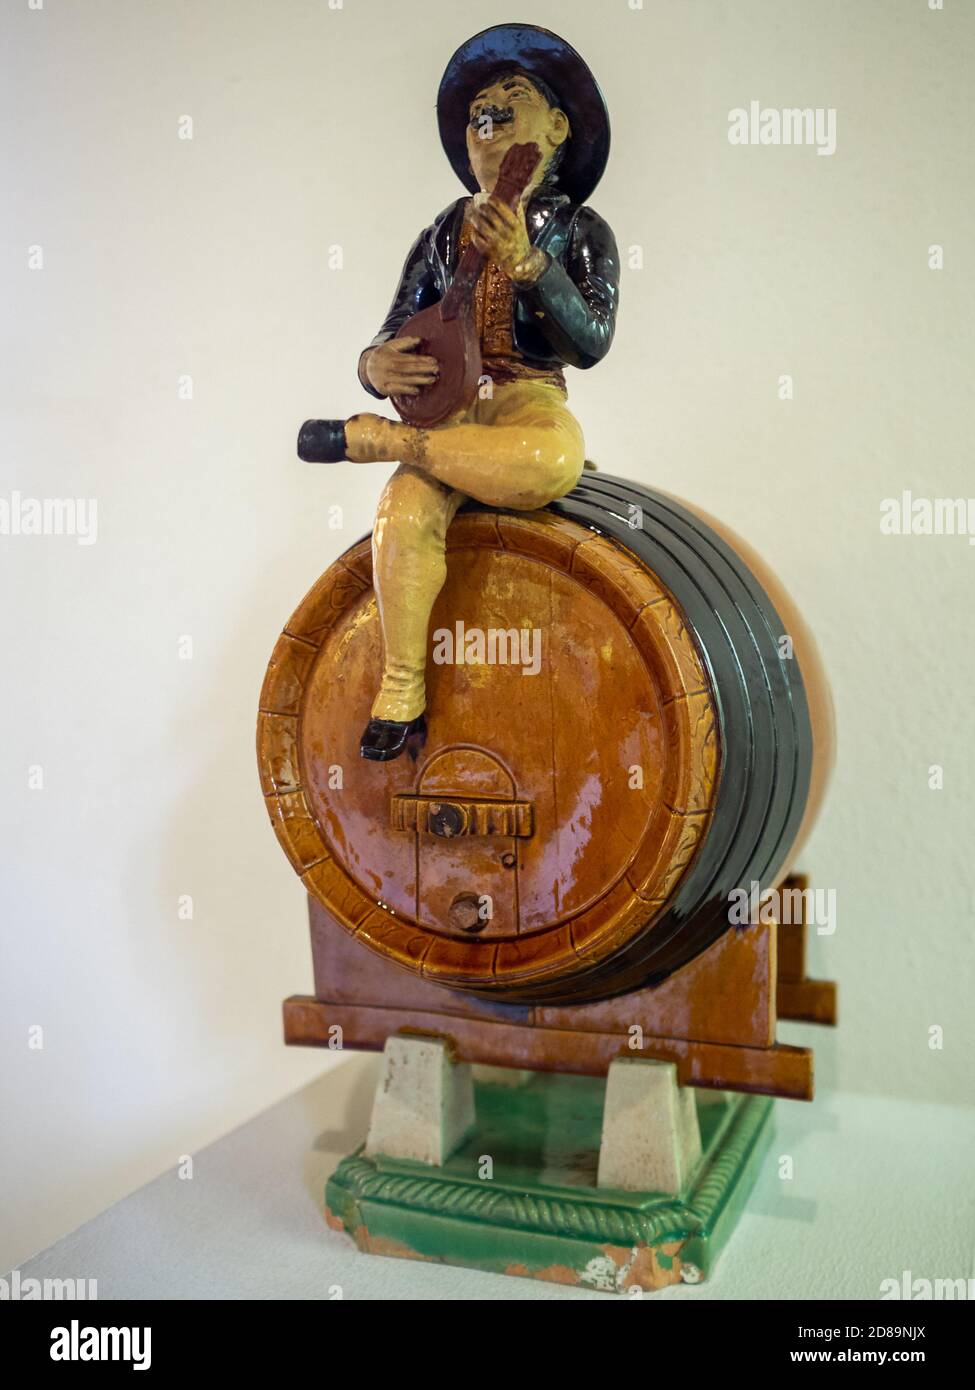 Uomo che suona la chitarra portoghese seduto in una botte di vino fatto In ceramica di Rafael Bordalo Pinheiro Foto Stock